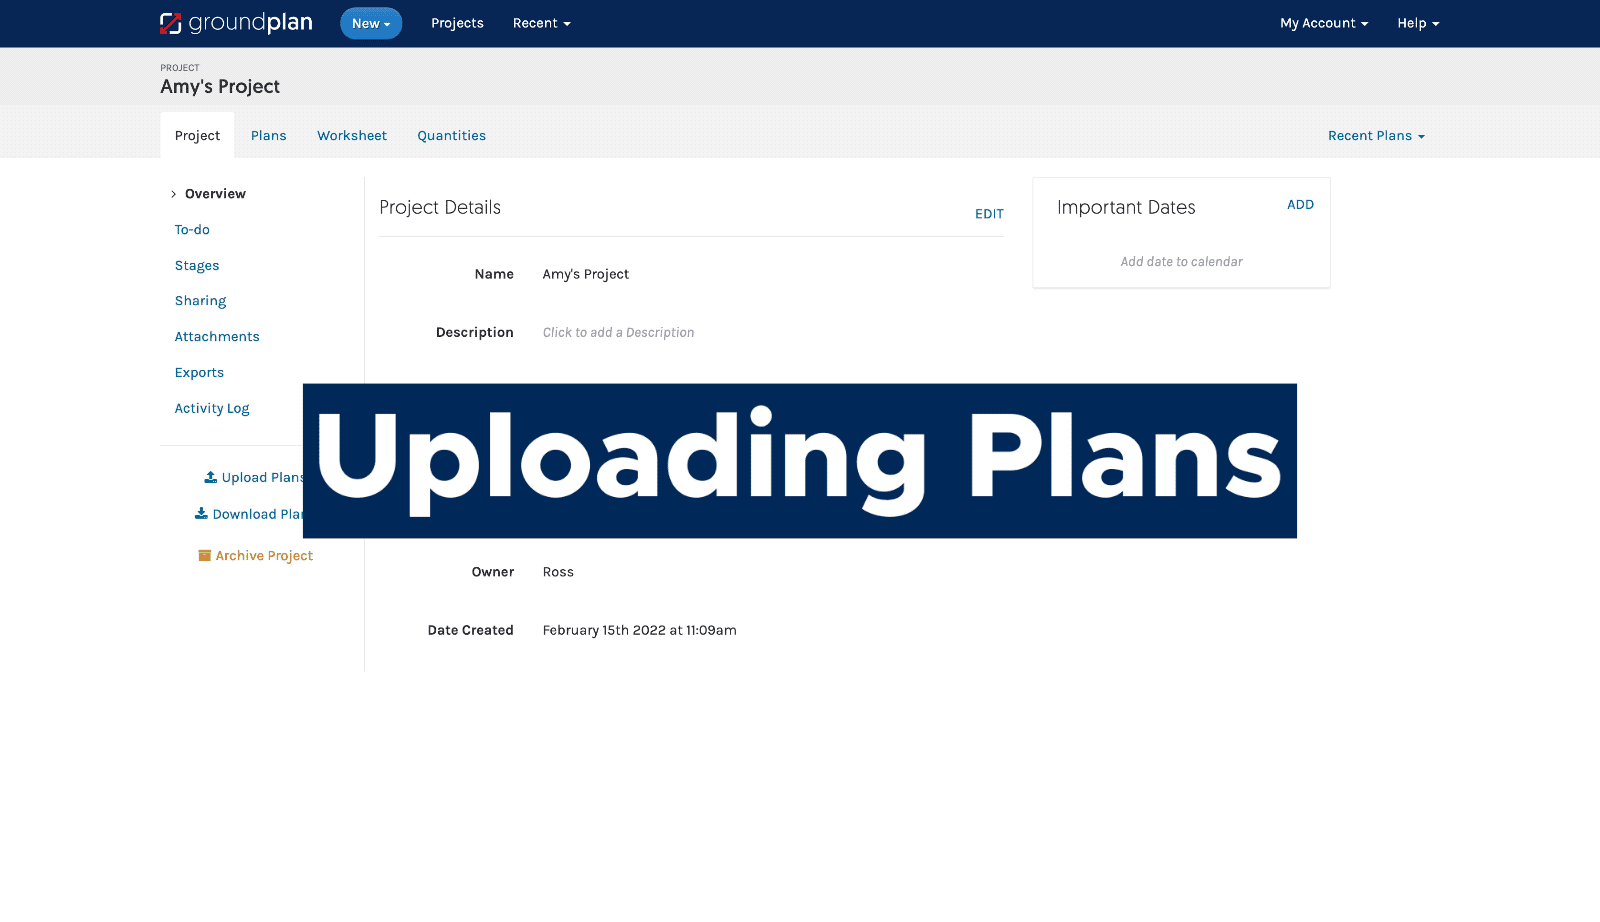 Uploading plans v022021 - v3